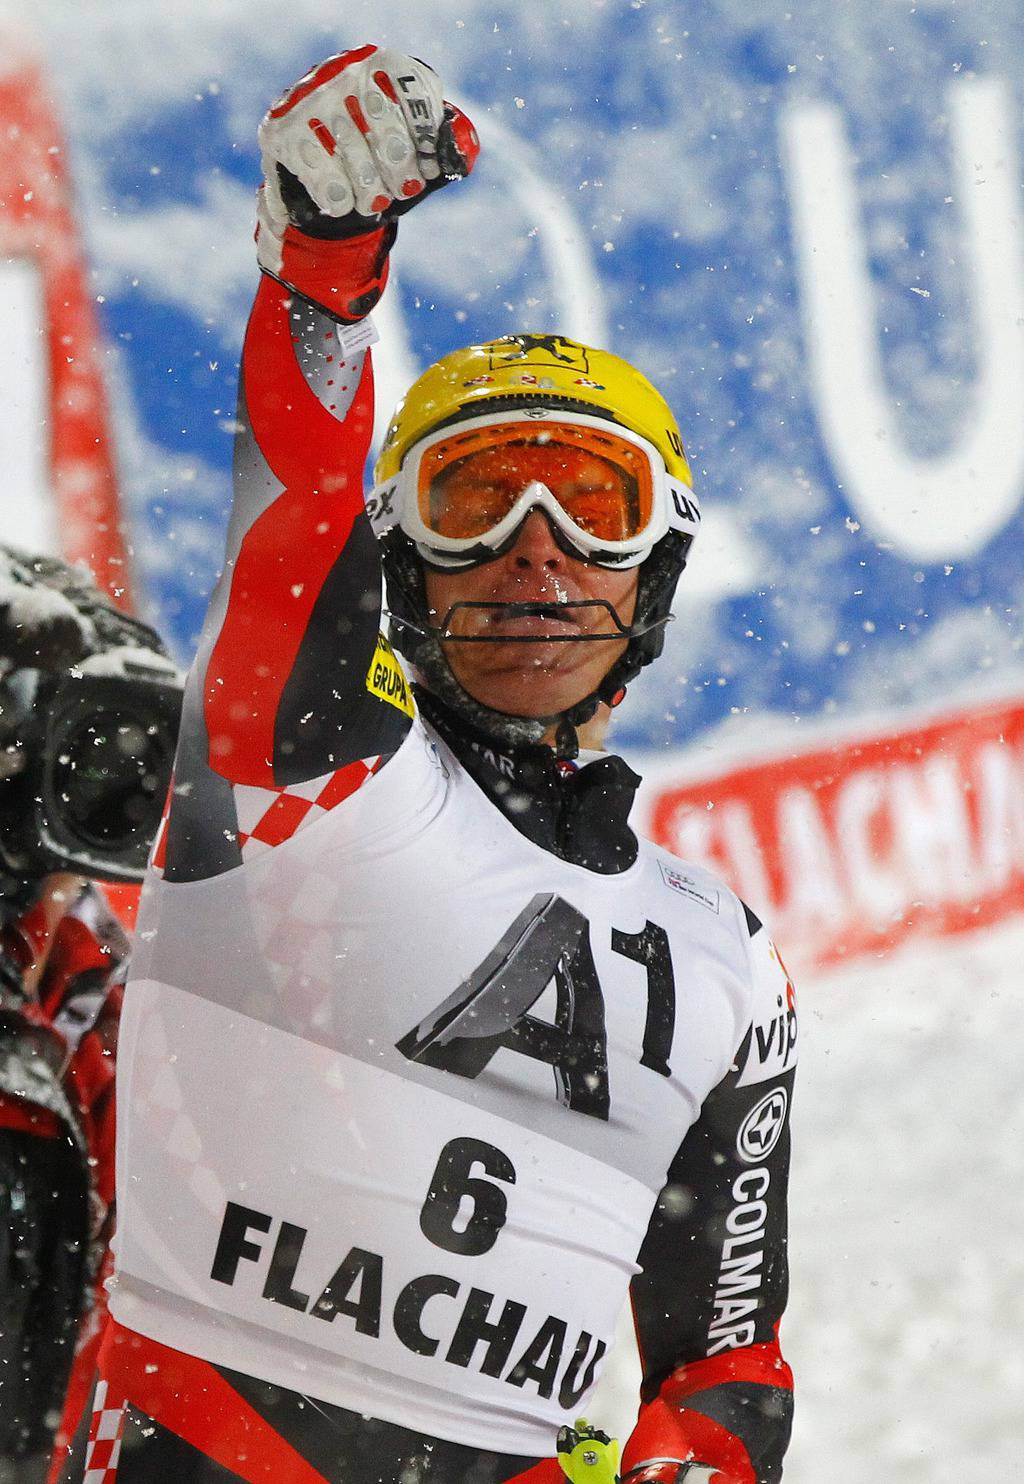 Druga pobjeda u sezoni: Ivica slavio u slalomu u Flachauu!